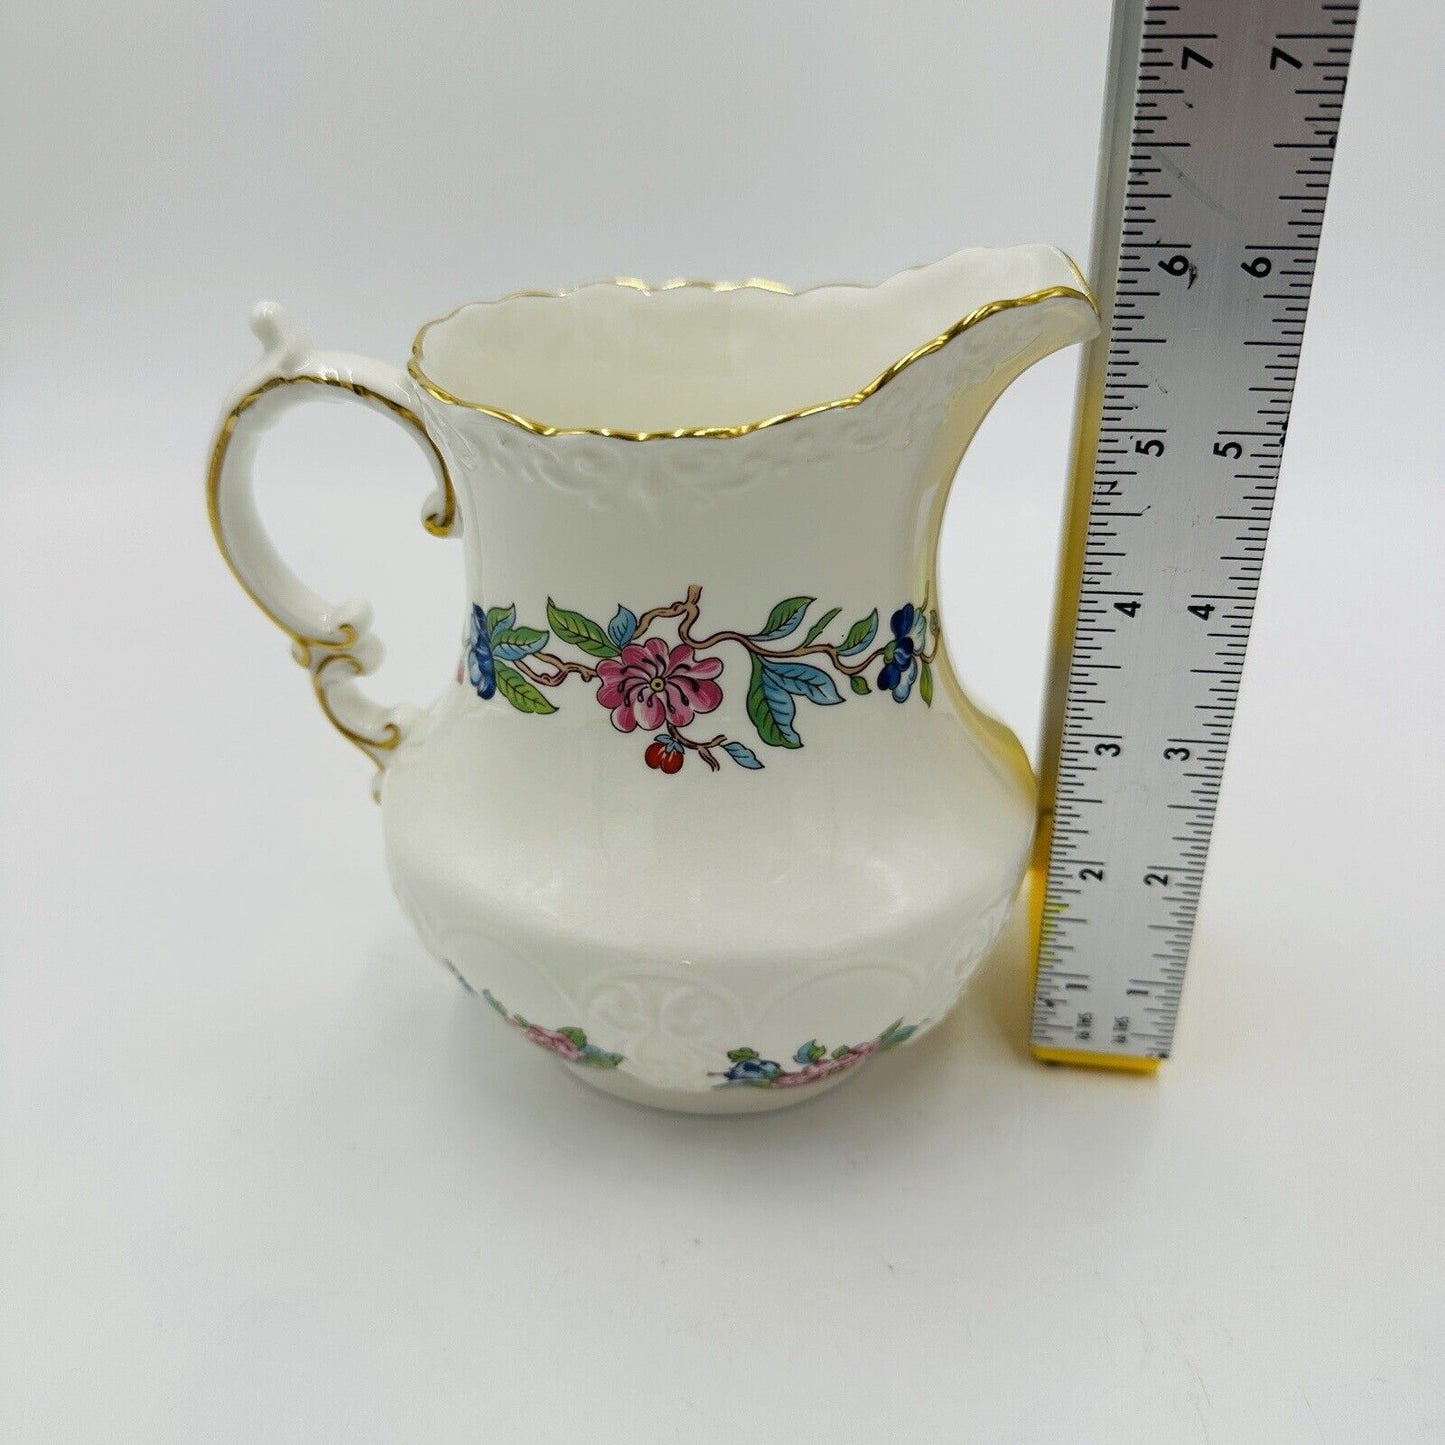 Aynsley Pitcher Porcelain Pembroke Floral 6in H 18th Century Design Large